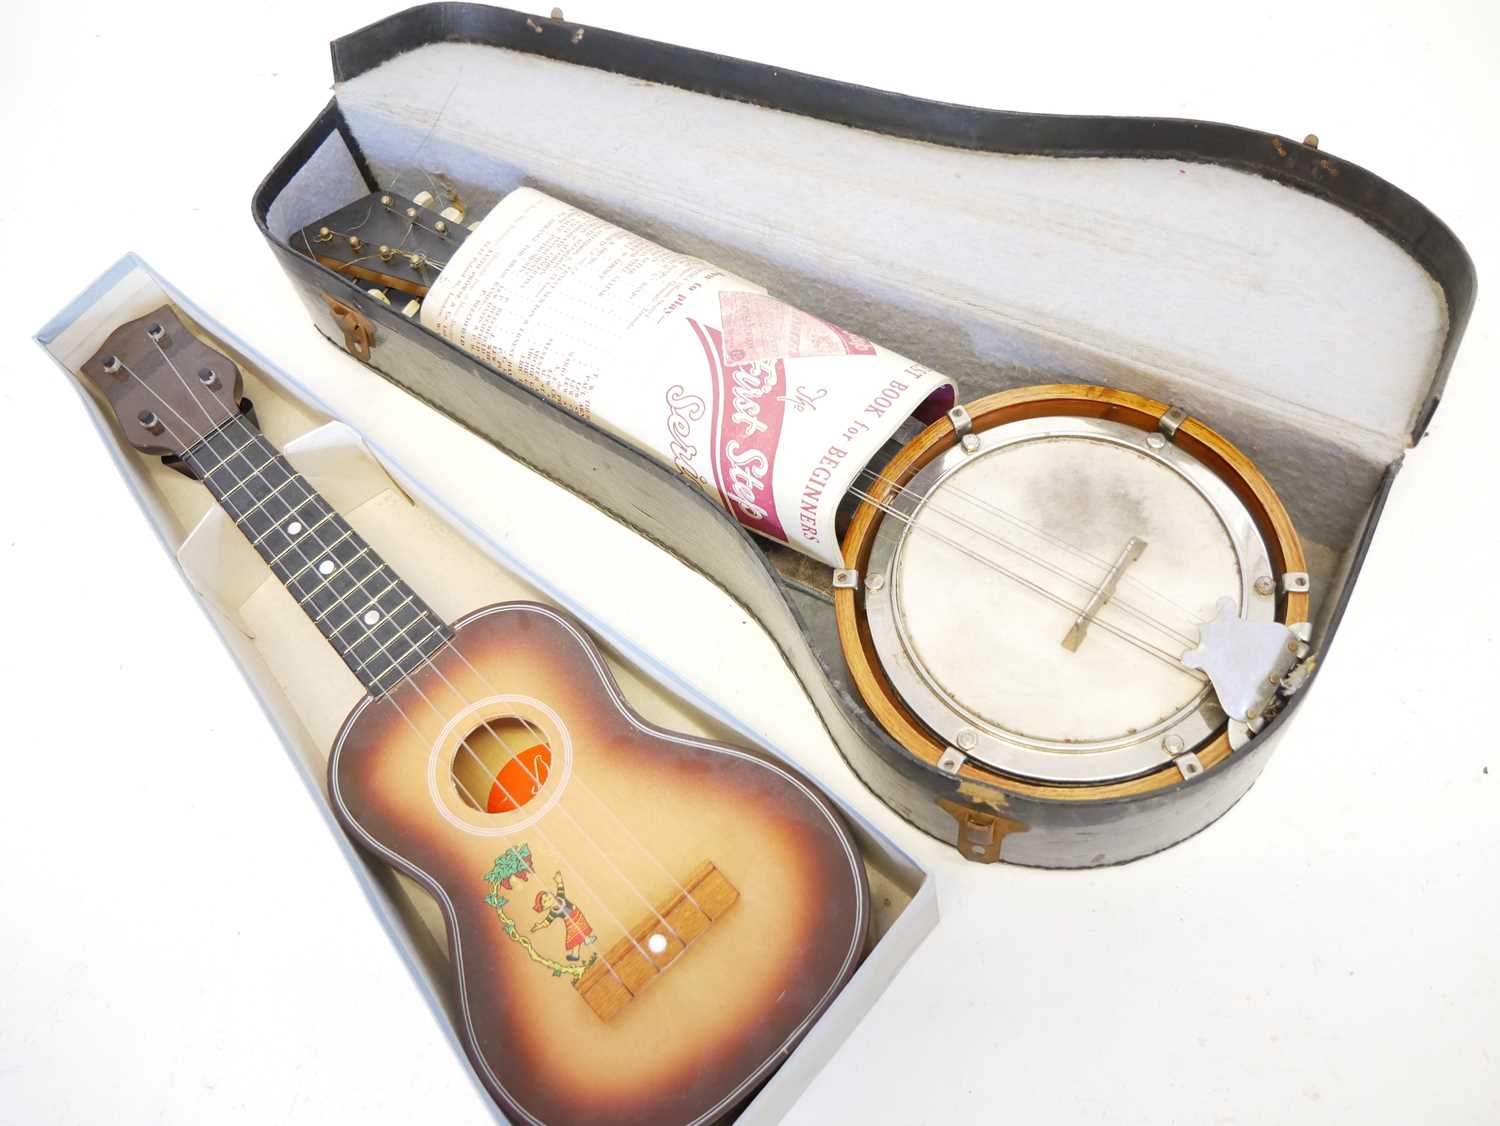 Fitzroy mando banjo and a ukulele - Image 6 of 6